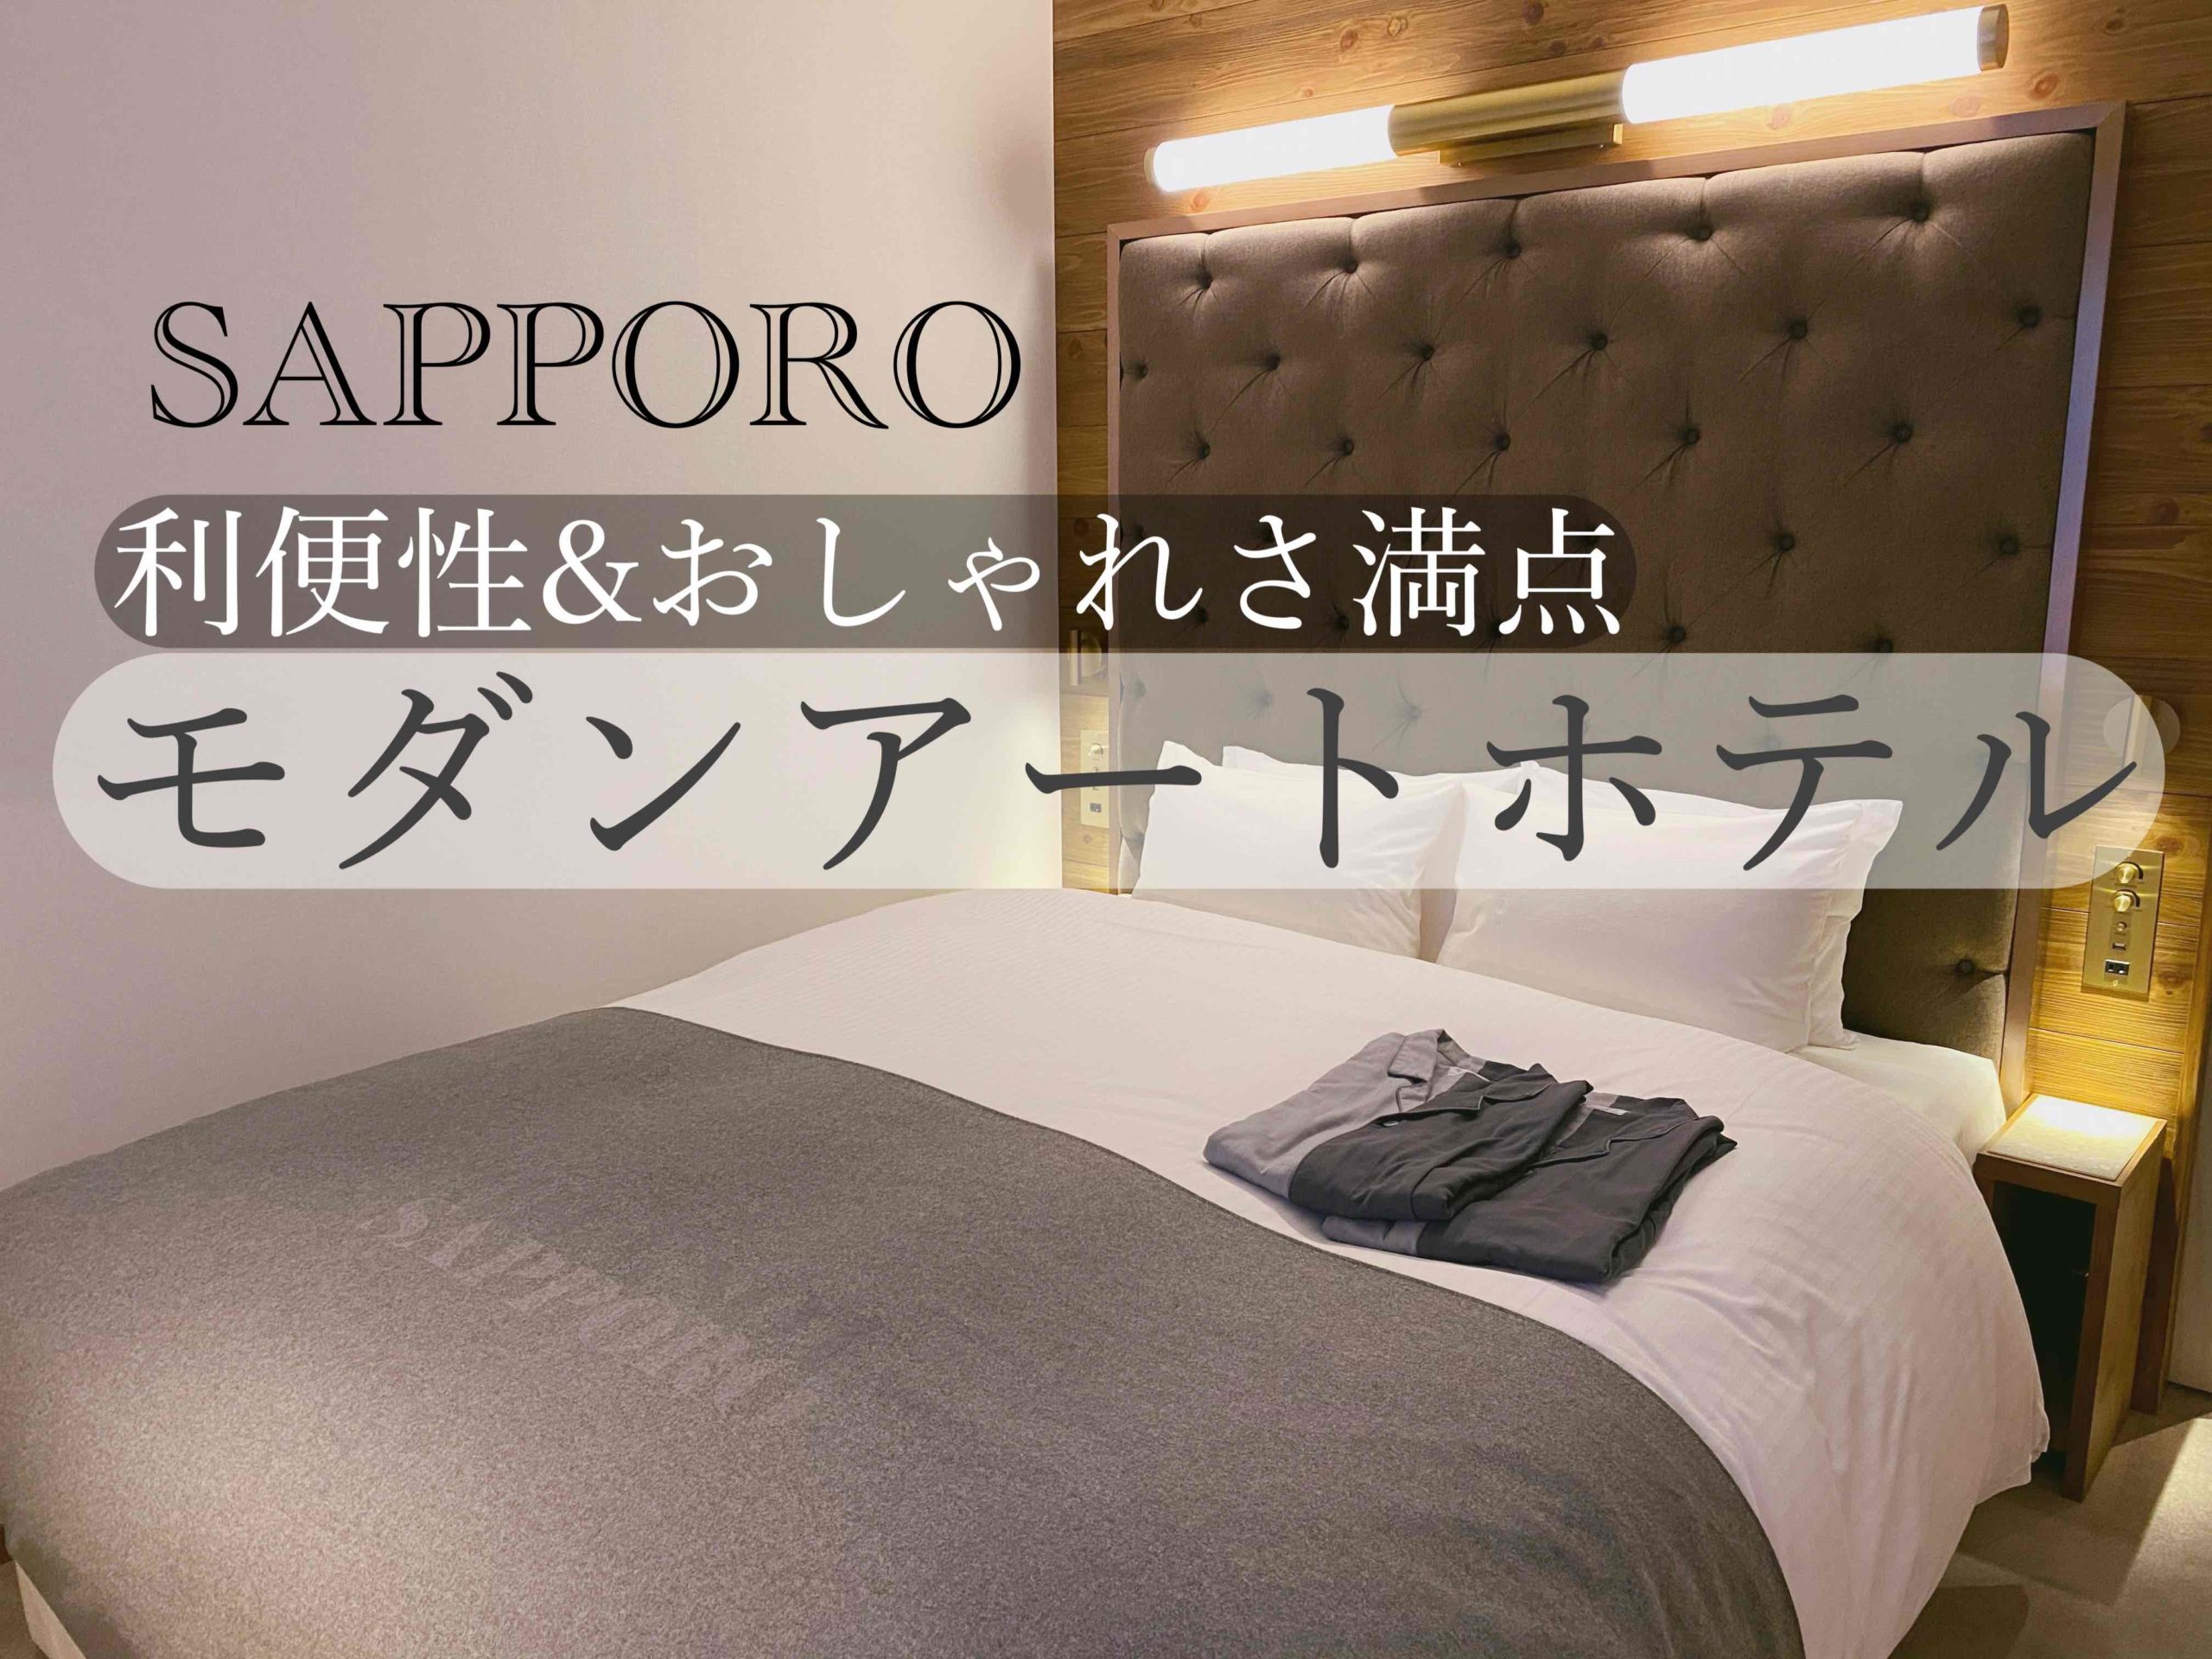 札幌女子旅 利便性 おしゃれさ満点のthe Knot Hotel ひとり女子旅案内